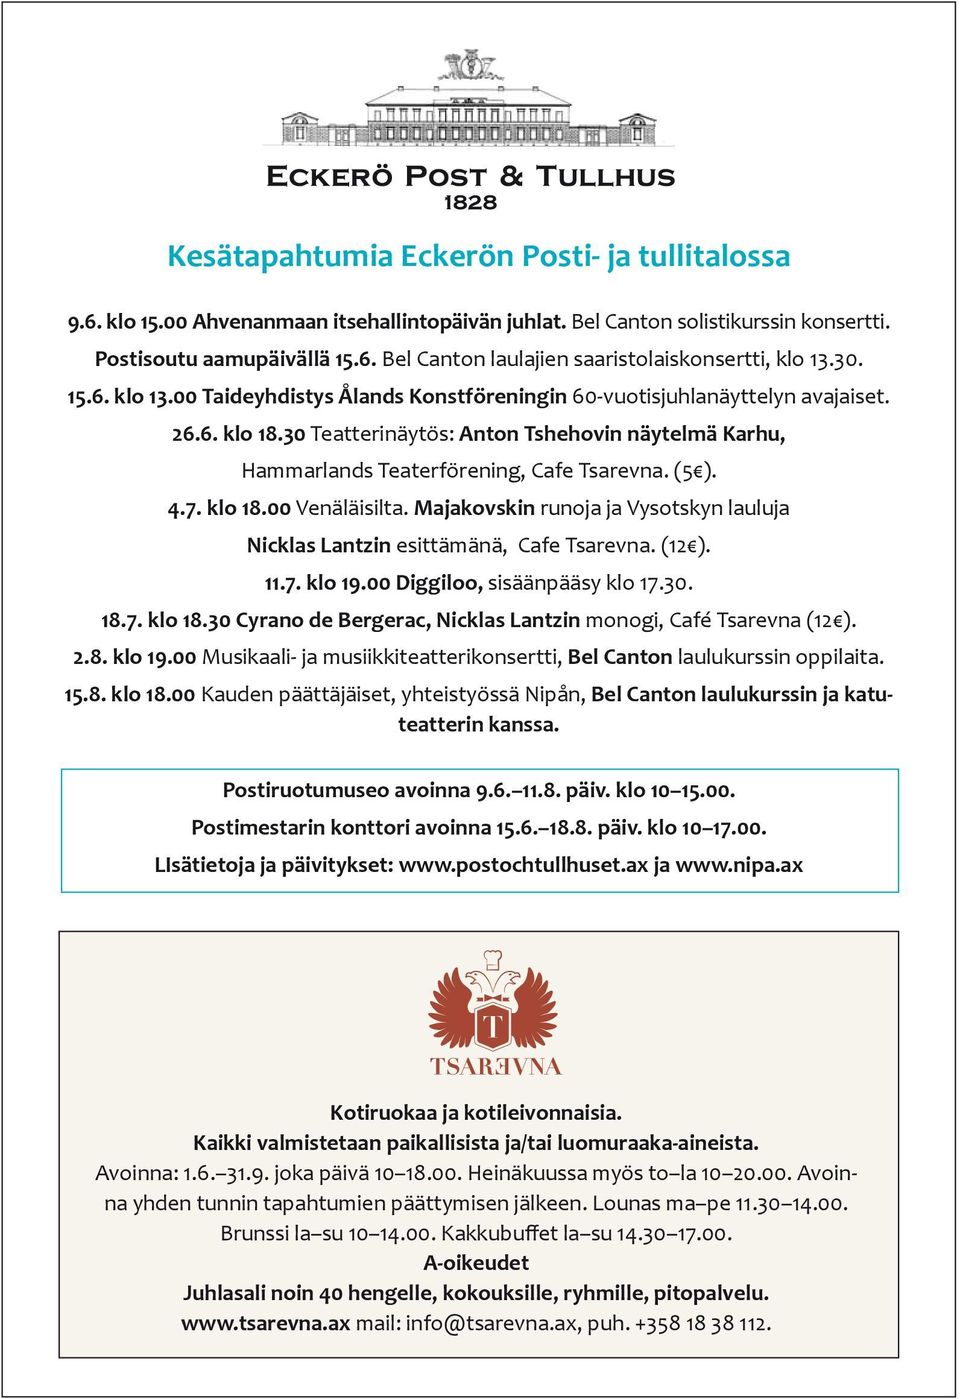 (5 ). 4.7. klo 18.00 Venäläisilta. Majakovskin runoja ja Vysotskyn lauluja Nicklas Lantzin esittämänä, Cafe Tsarevna. (12 ). 11.7. klo 19.00 Diggiloo, sisäänpääsy klo 17.30. 18.7. klo 18.30 Cyrano de Bergerac, Nicklas Lantzin monogi, Café Tsarevna (12 ).